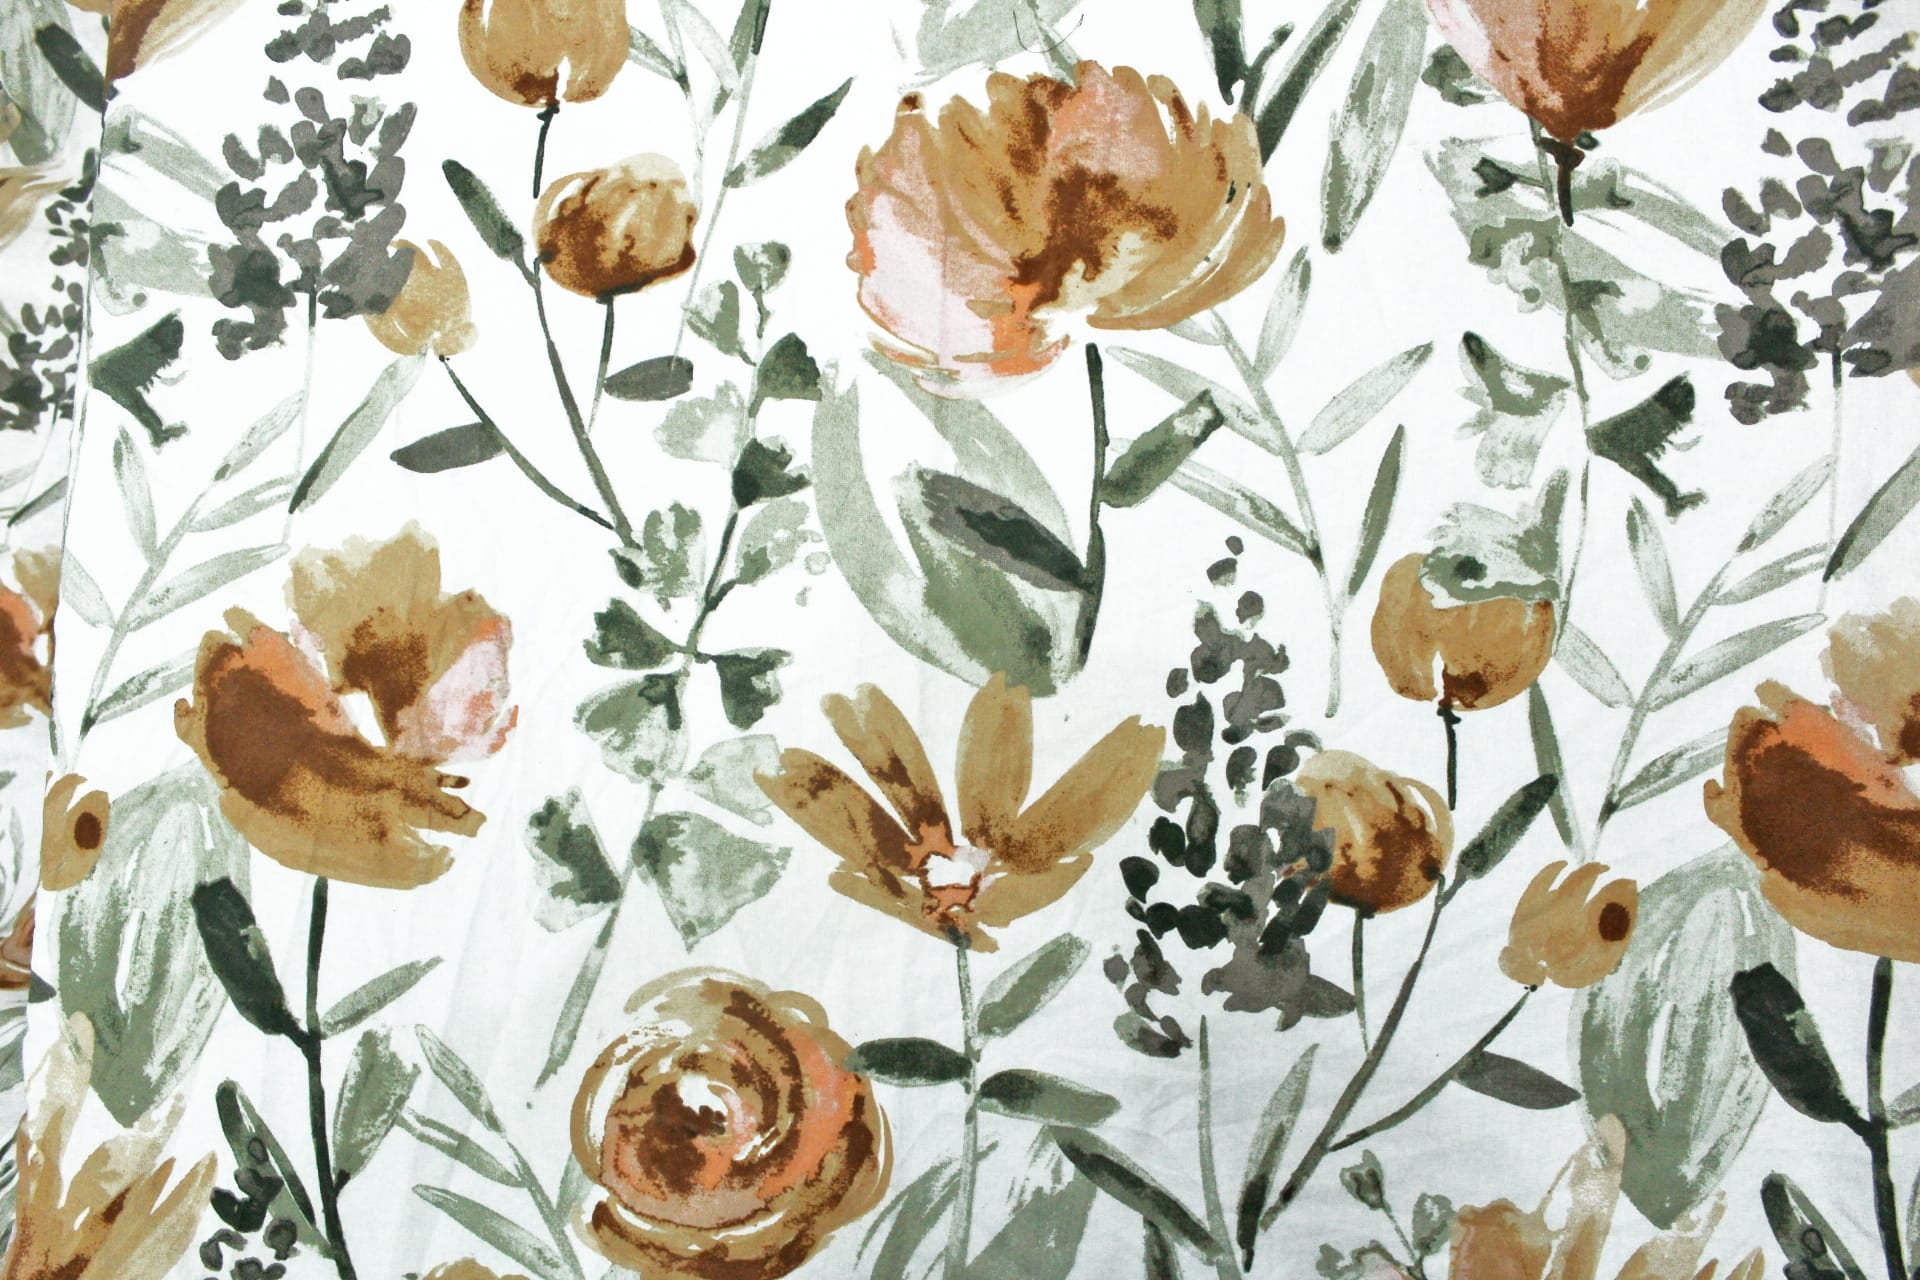 Printed Floral Pattern Cotton 6 Pcs Diwan Bedsheet Set -Brown